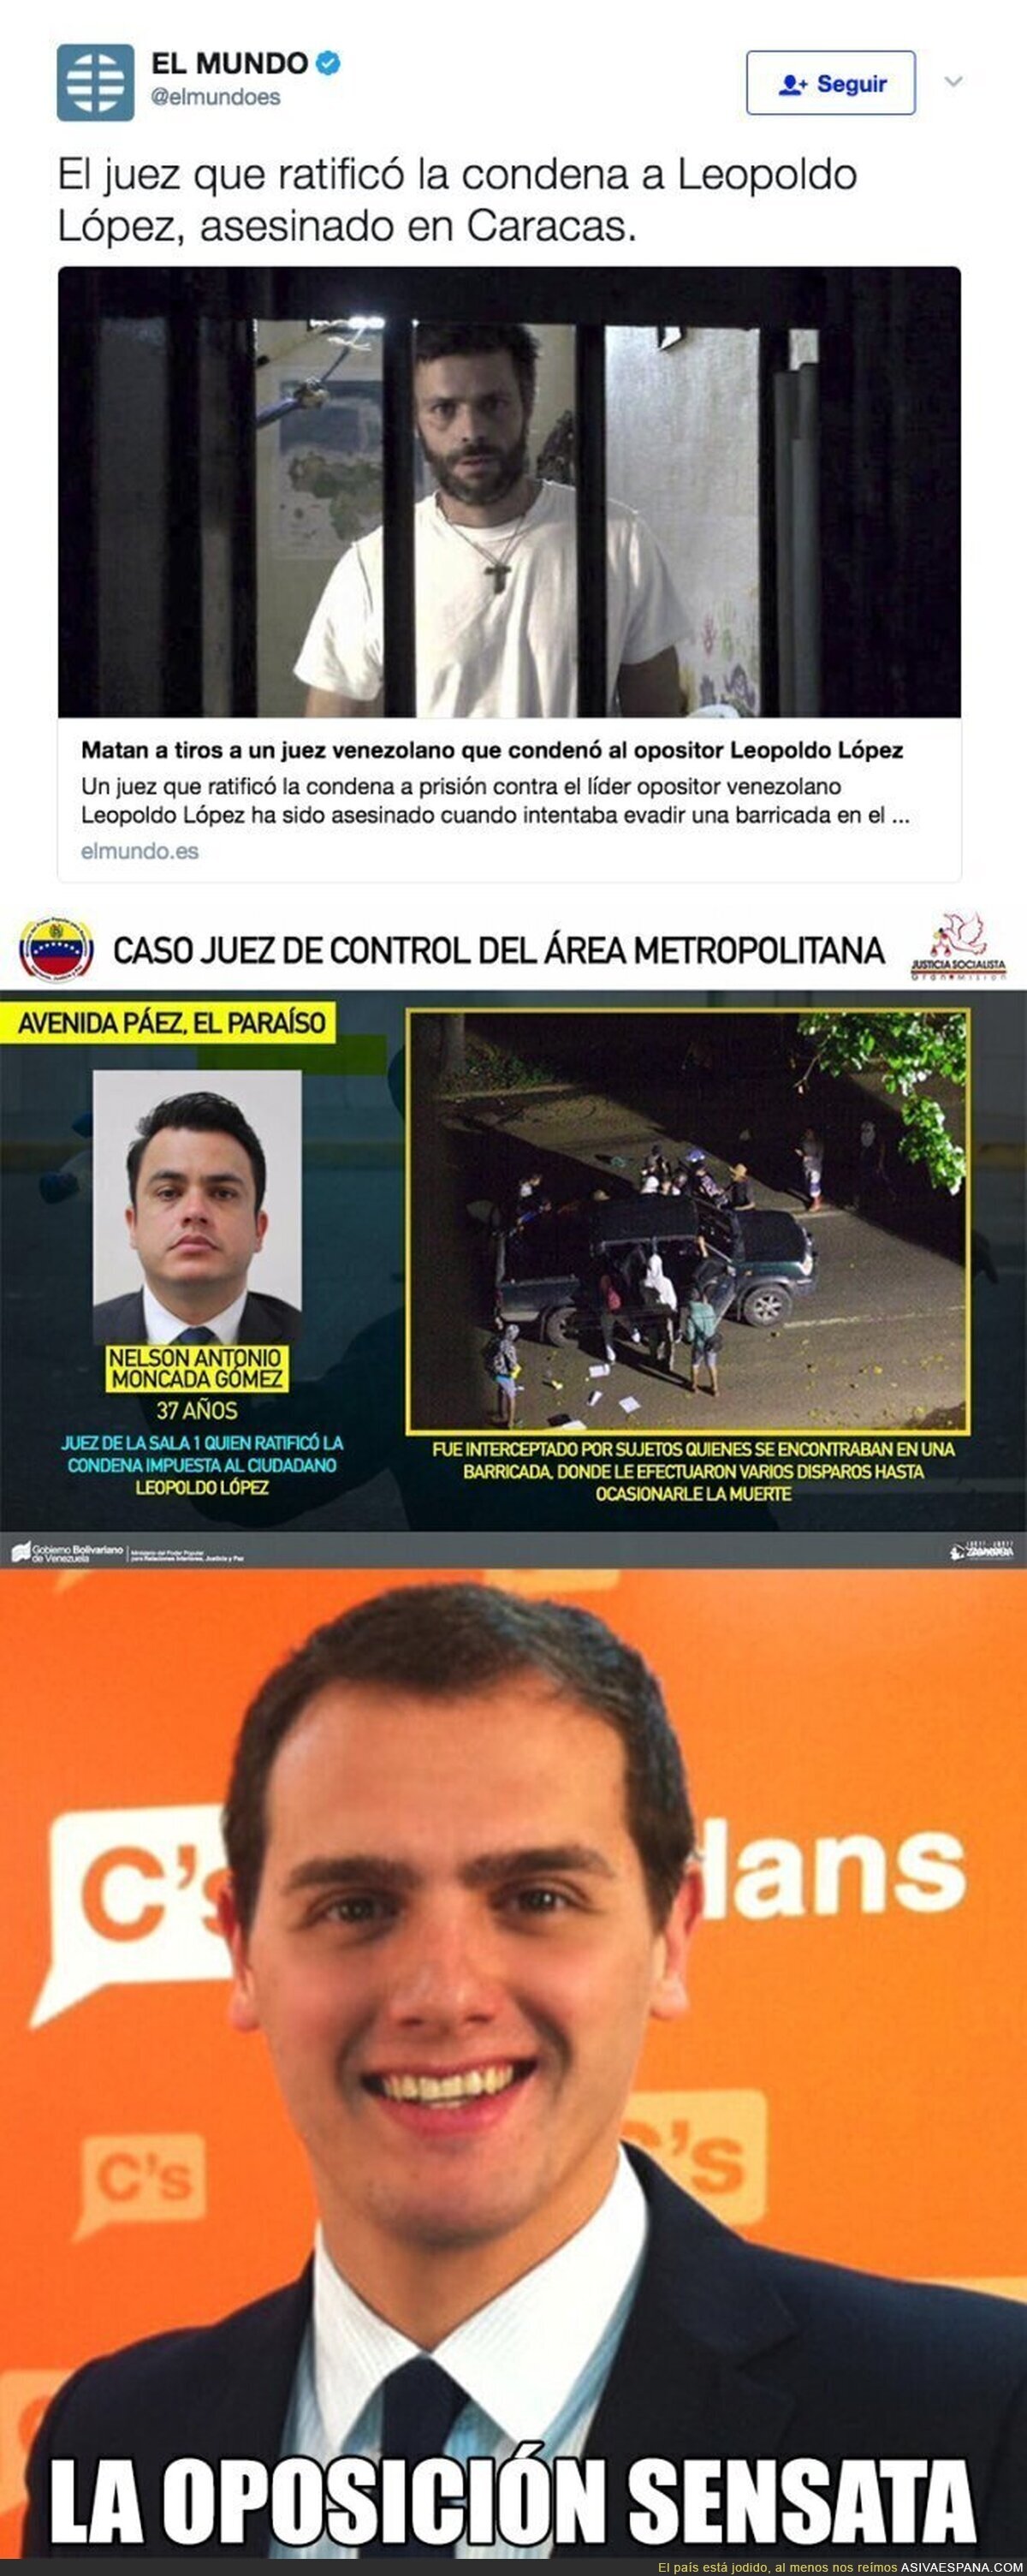 La oposición de Venezuela asesina a un juez por ratificar la condena a Leopoldo López